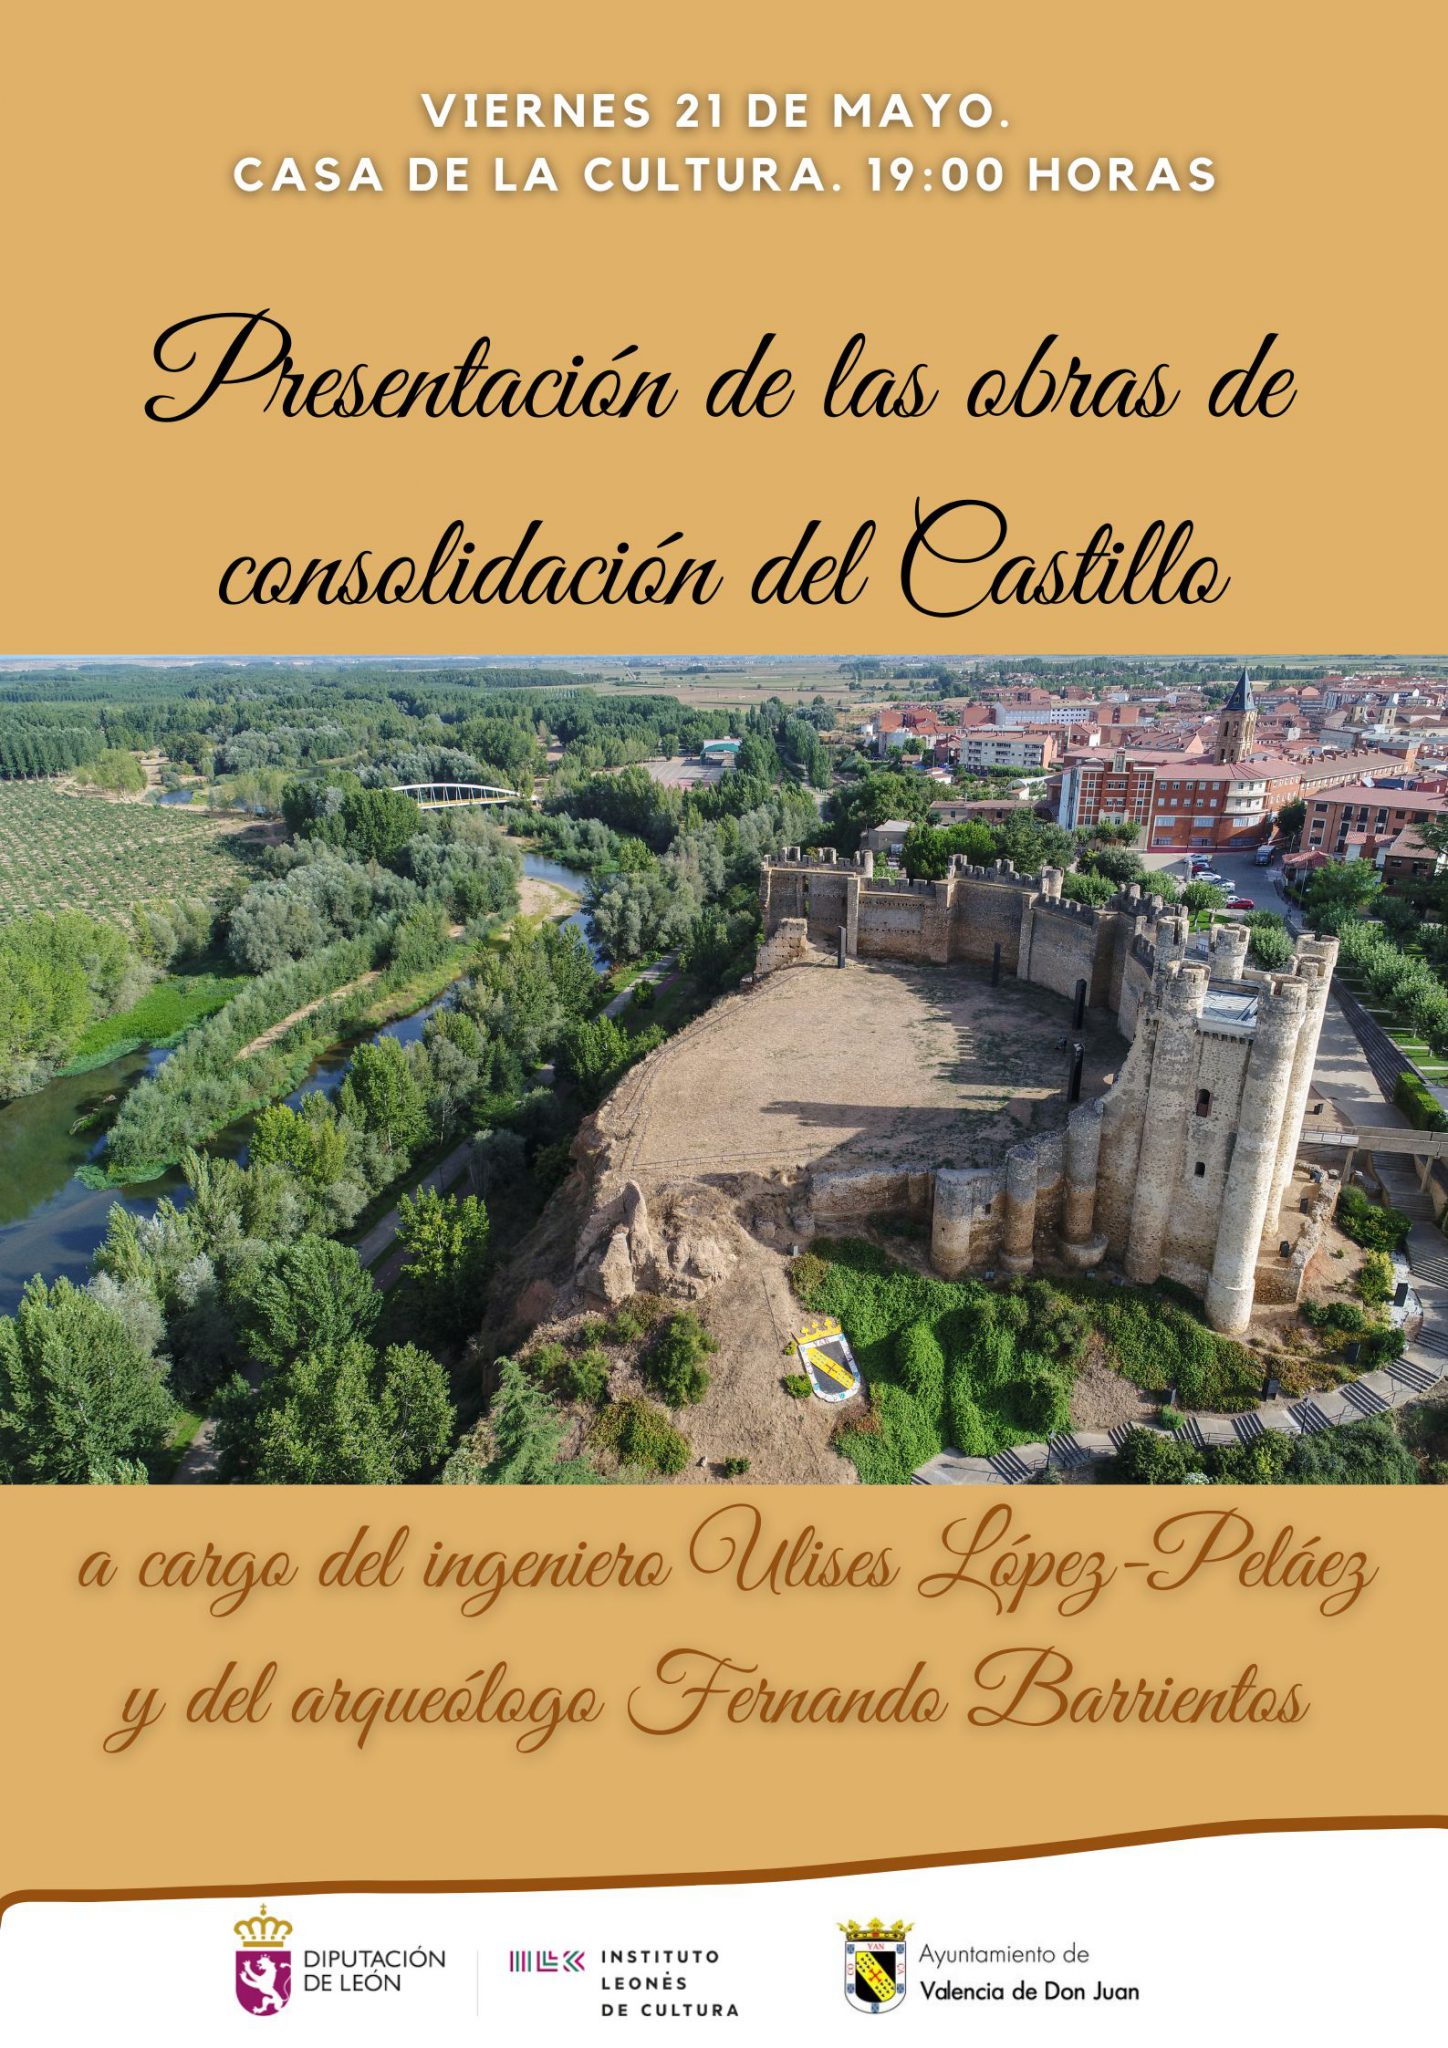 Presentación de las obras de consolidación del Castillo